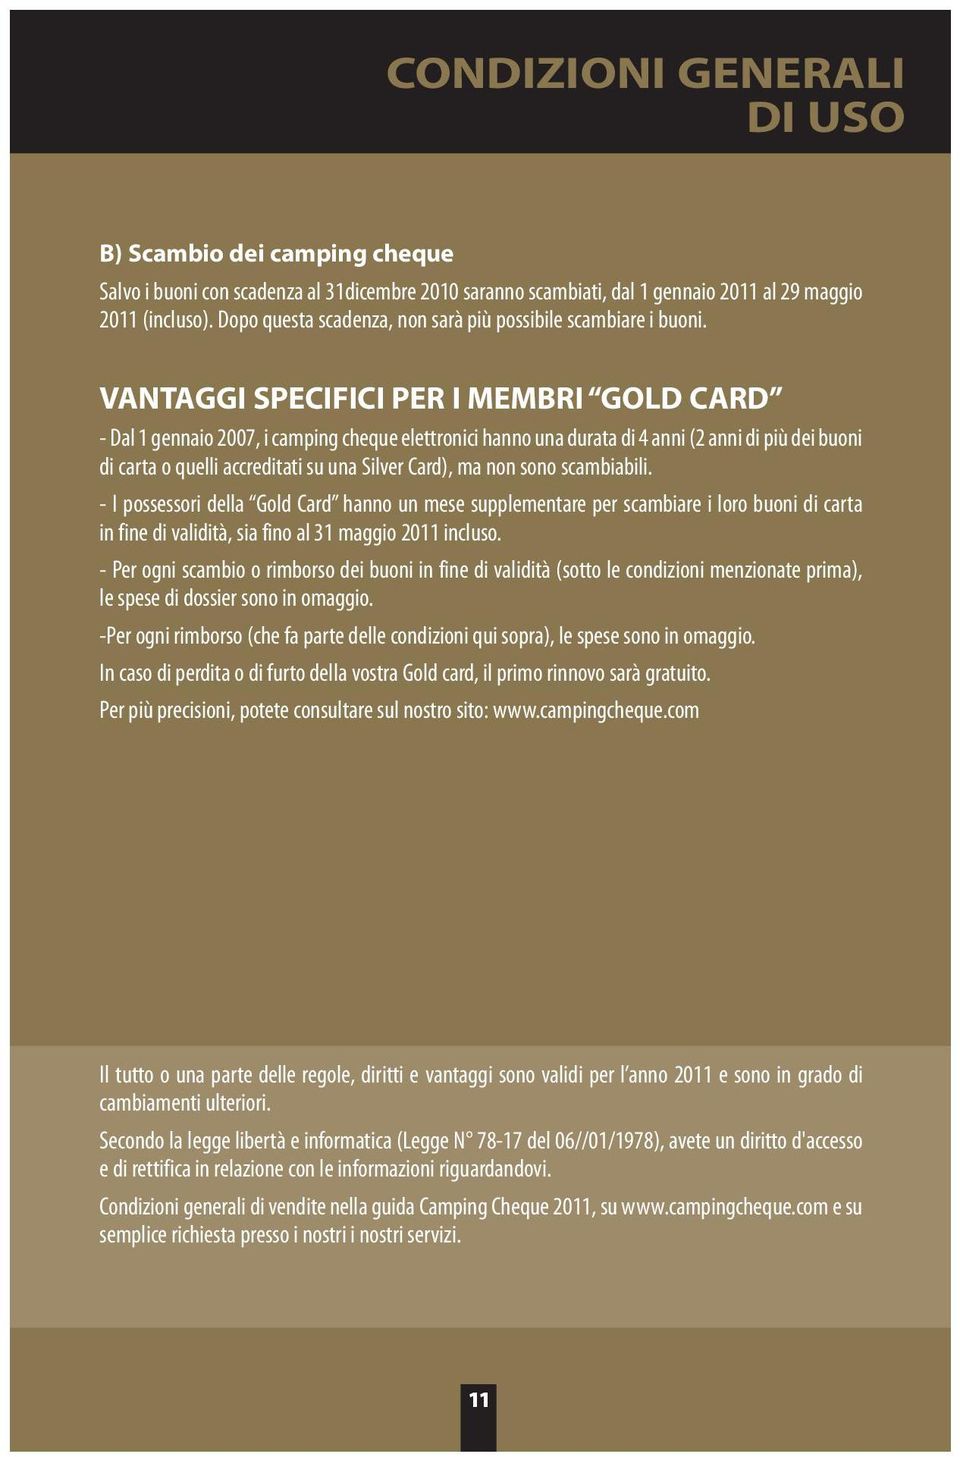 VANTAGGI SPECIFICI PER I MEMBRI GOLD CARD - Dal 1 gennaio 2007, i camping cheque elettronici hanno una durata di 4 anni (2 anni di più dei buoni di carta o quelli accreditati su una Silver Card), ma